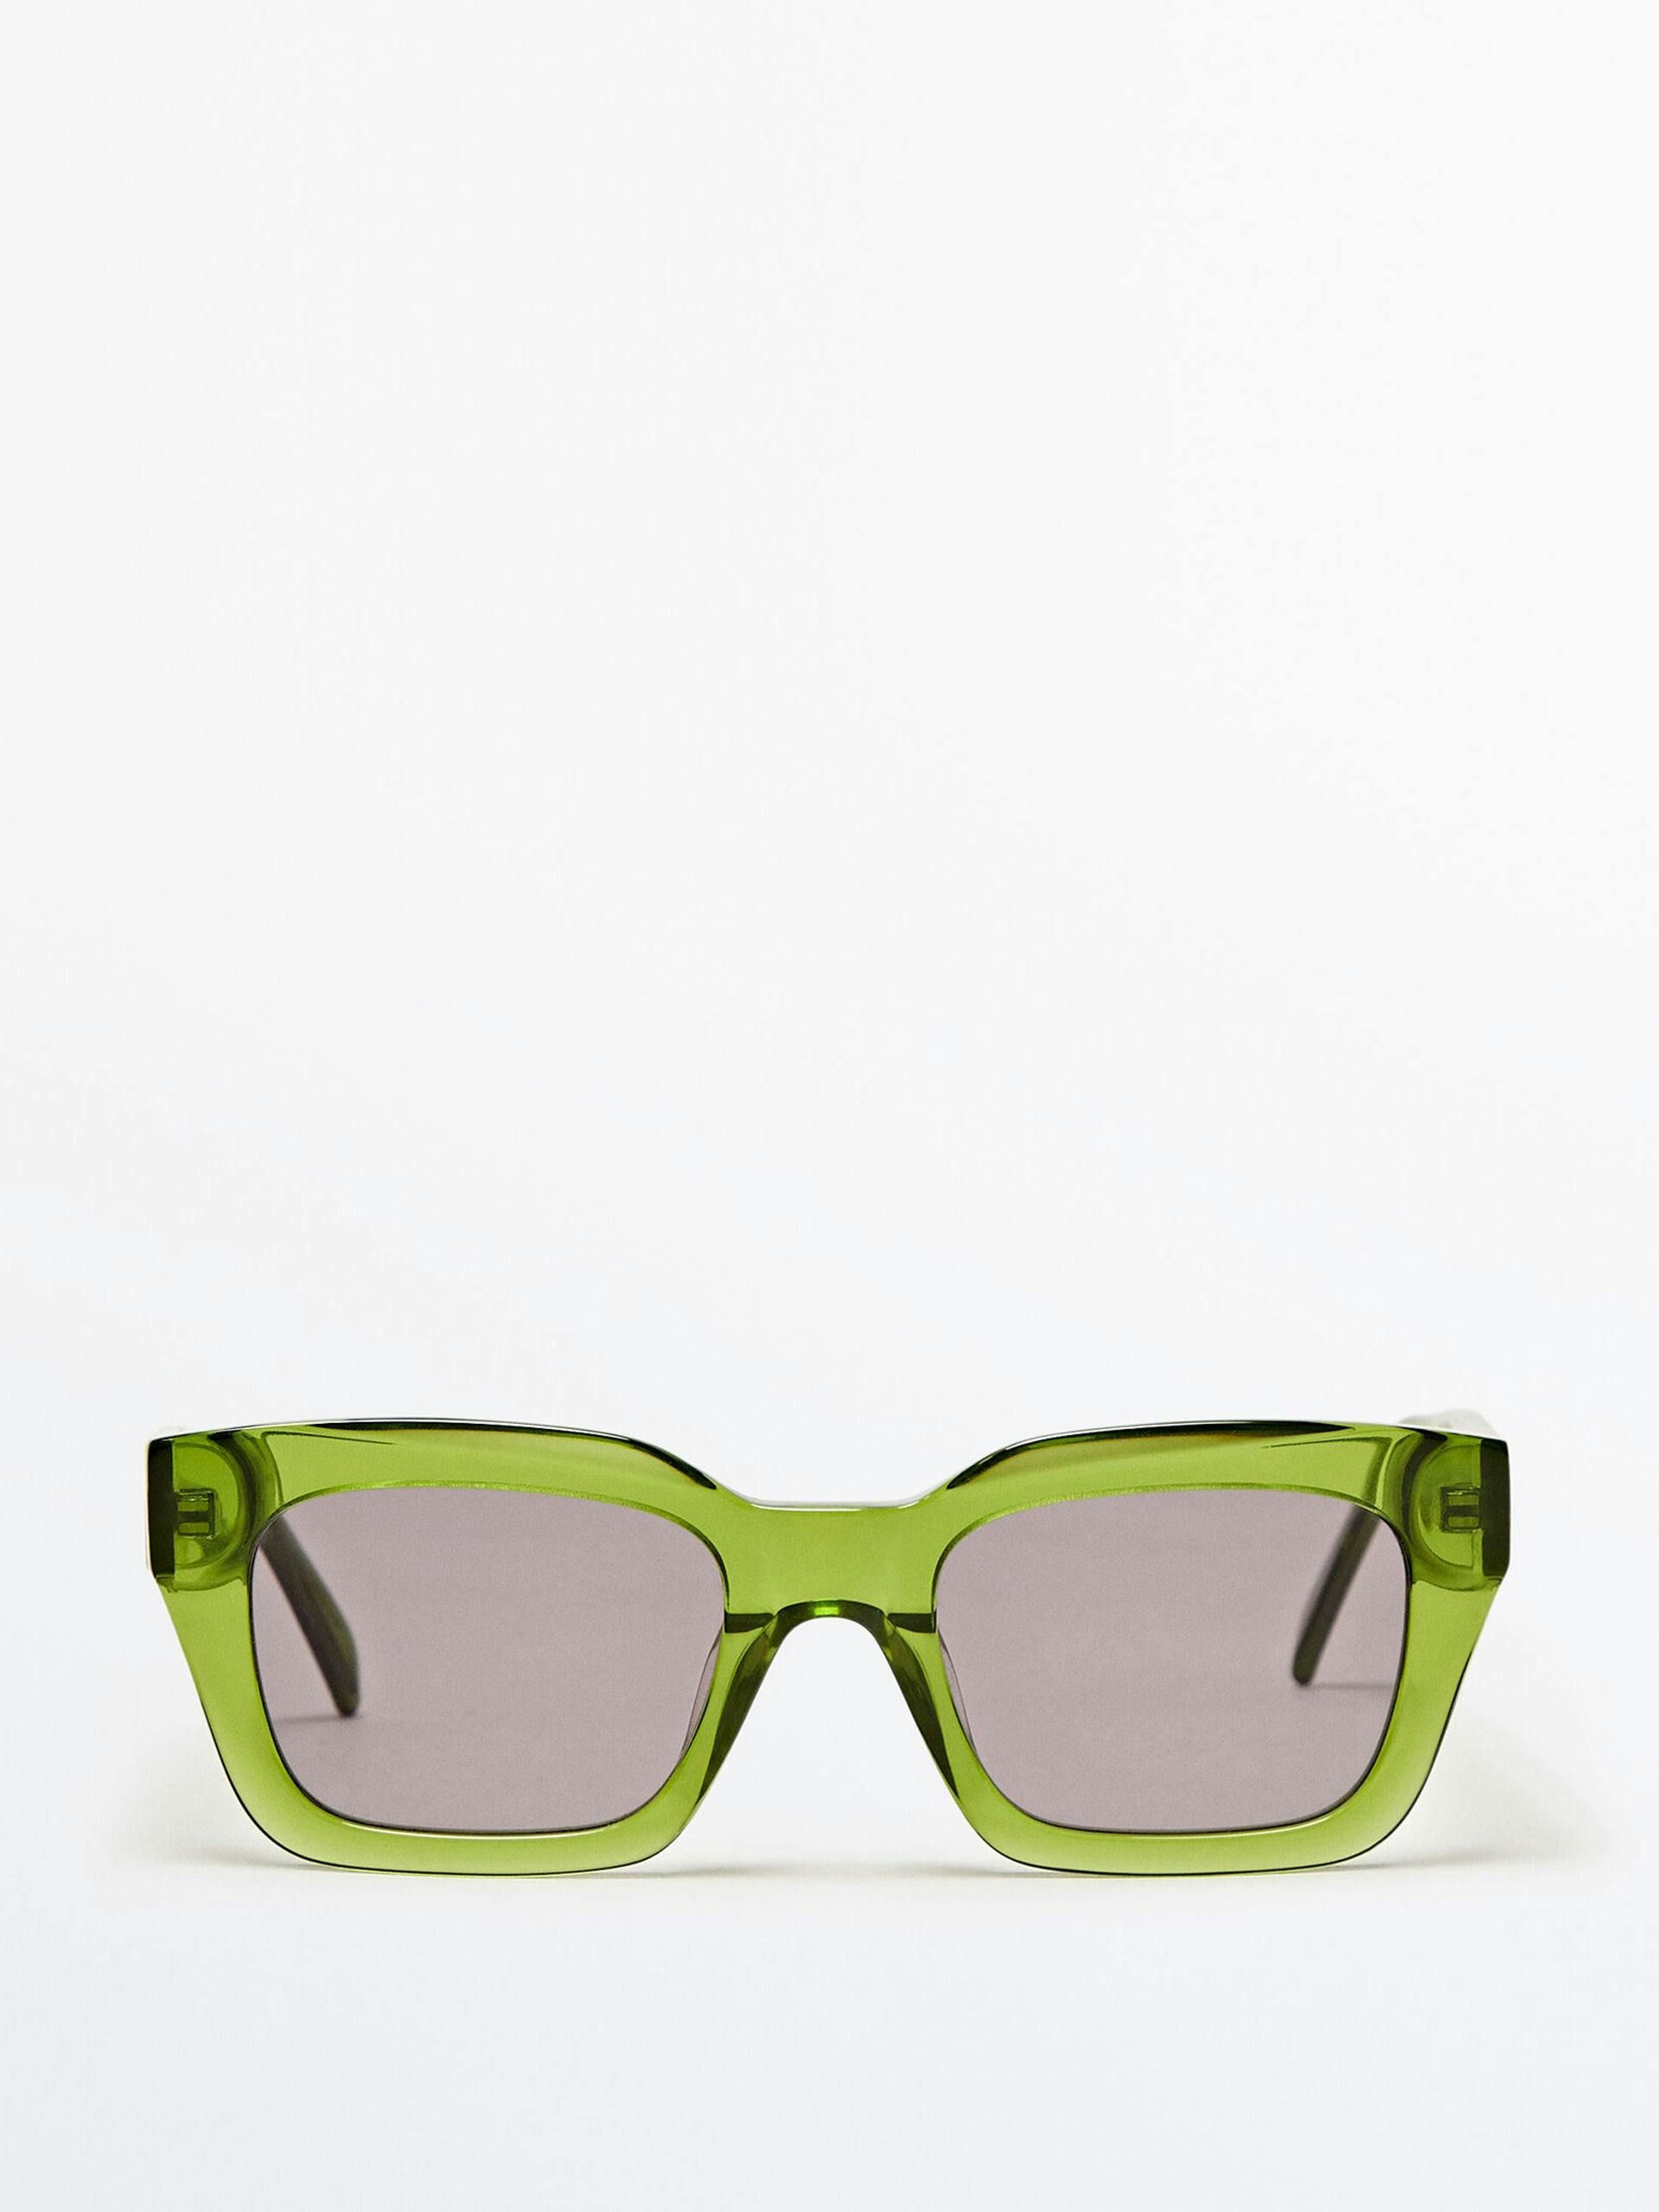 Green square sunglasses